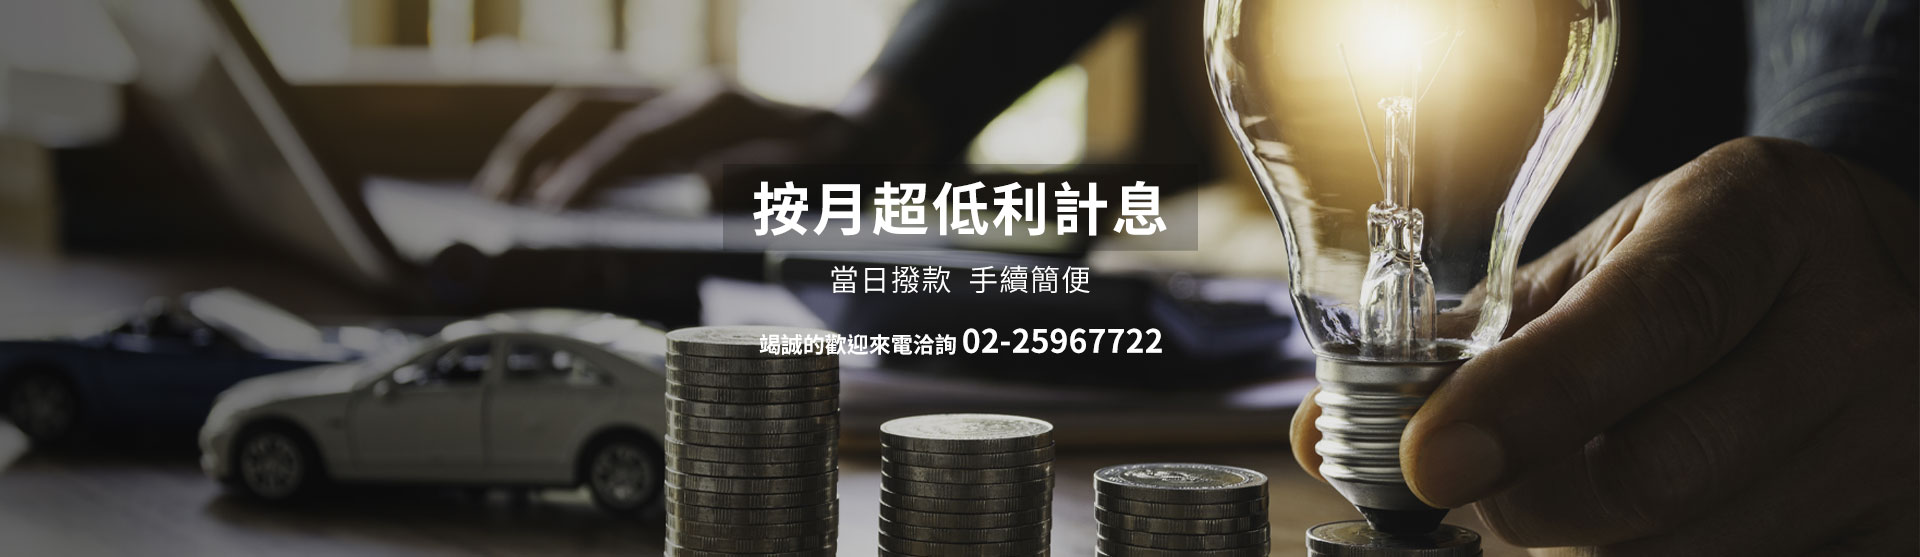 「台北當舖24小時服務」：快速應對財務需求的專業當舖服務